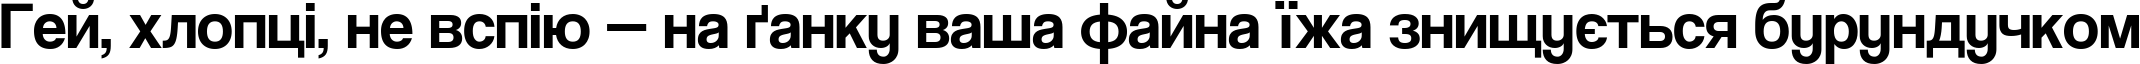 Пример написания шрифтом CoolveticaRg-Regular текста на украинском